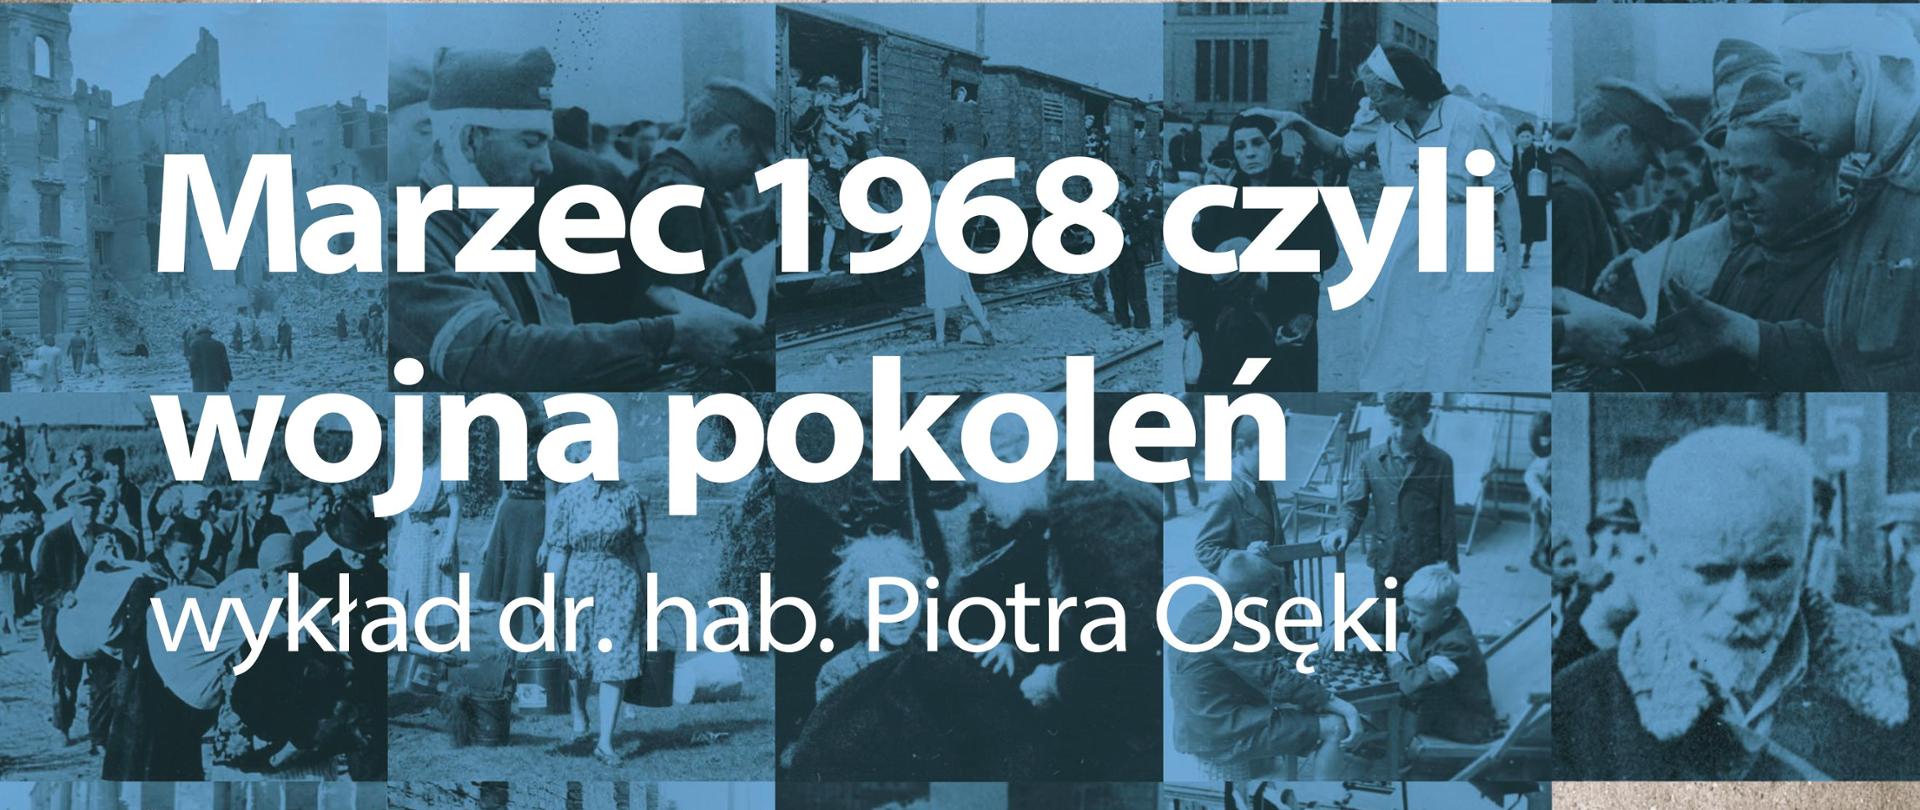 Marzec 1968 czyli wojna pokoleń – wykład dr. hab. Piotra Osęki
